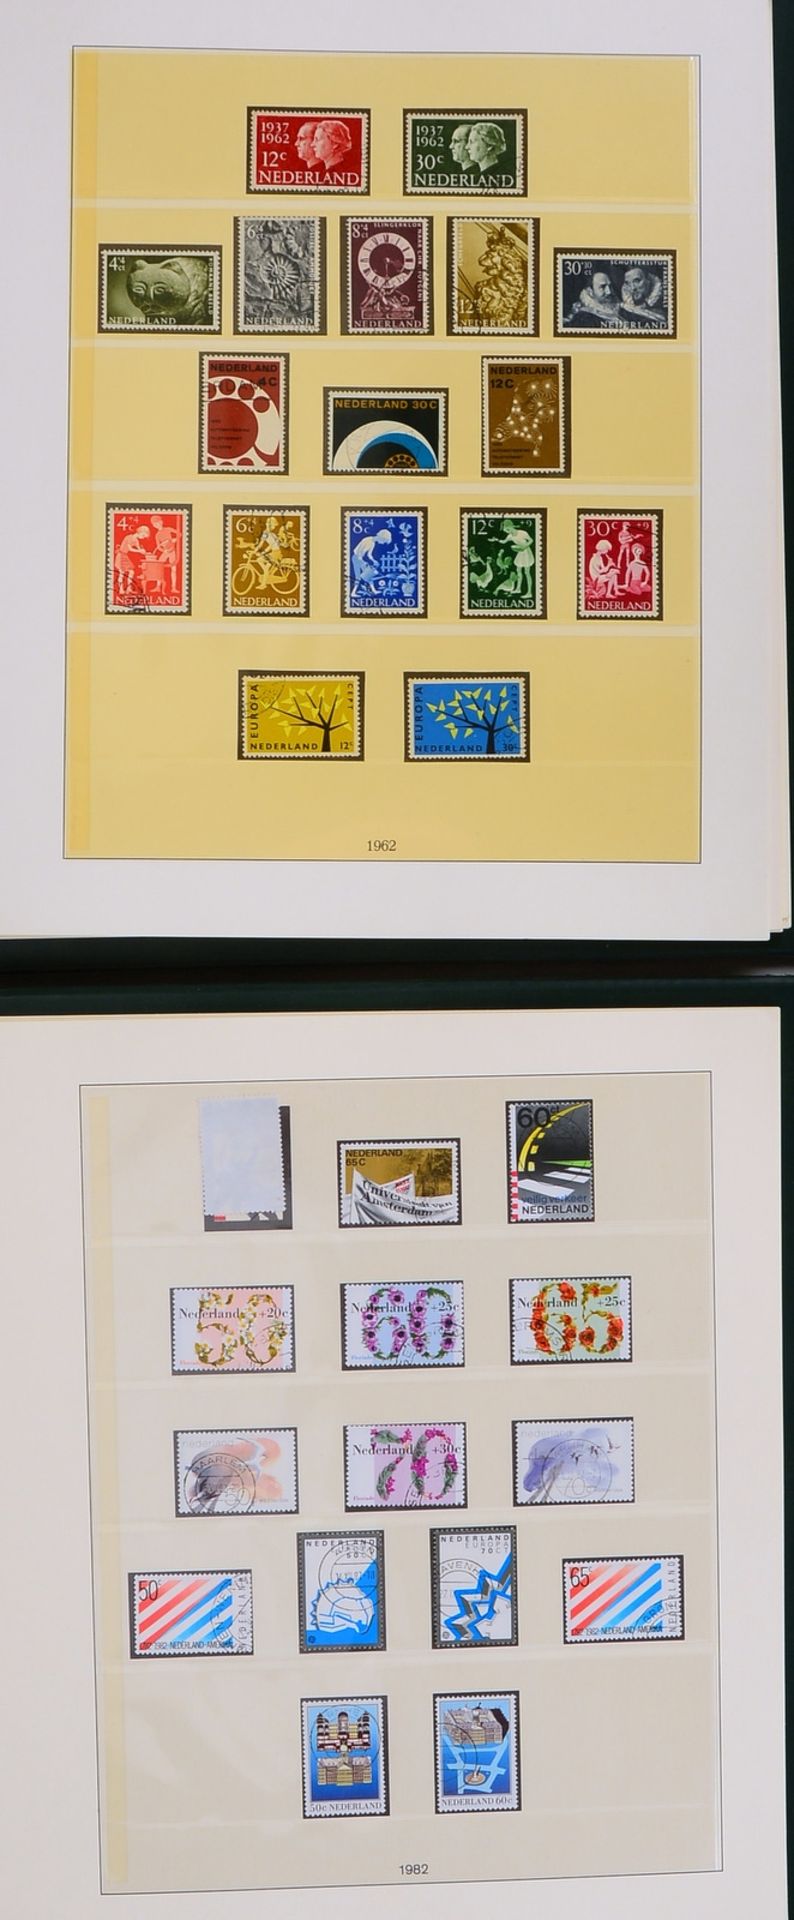 Briefmarken, 'Niederlande', 1945 - 1984: alle Ausgaben fast kompl., überw. gest., in 2x Alben - Bild 2 aus 3